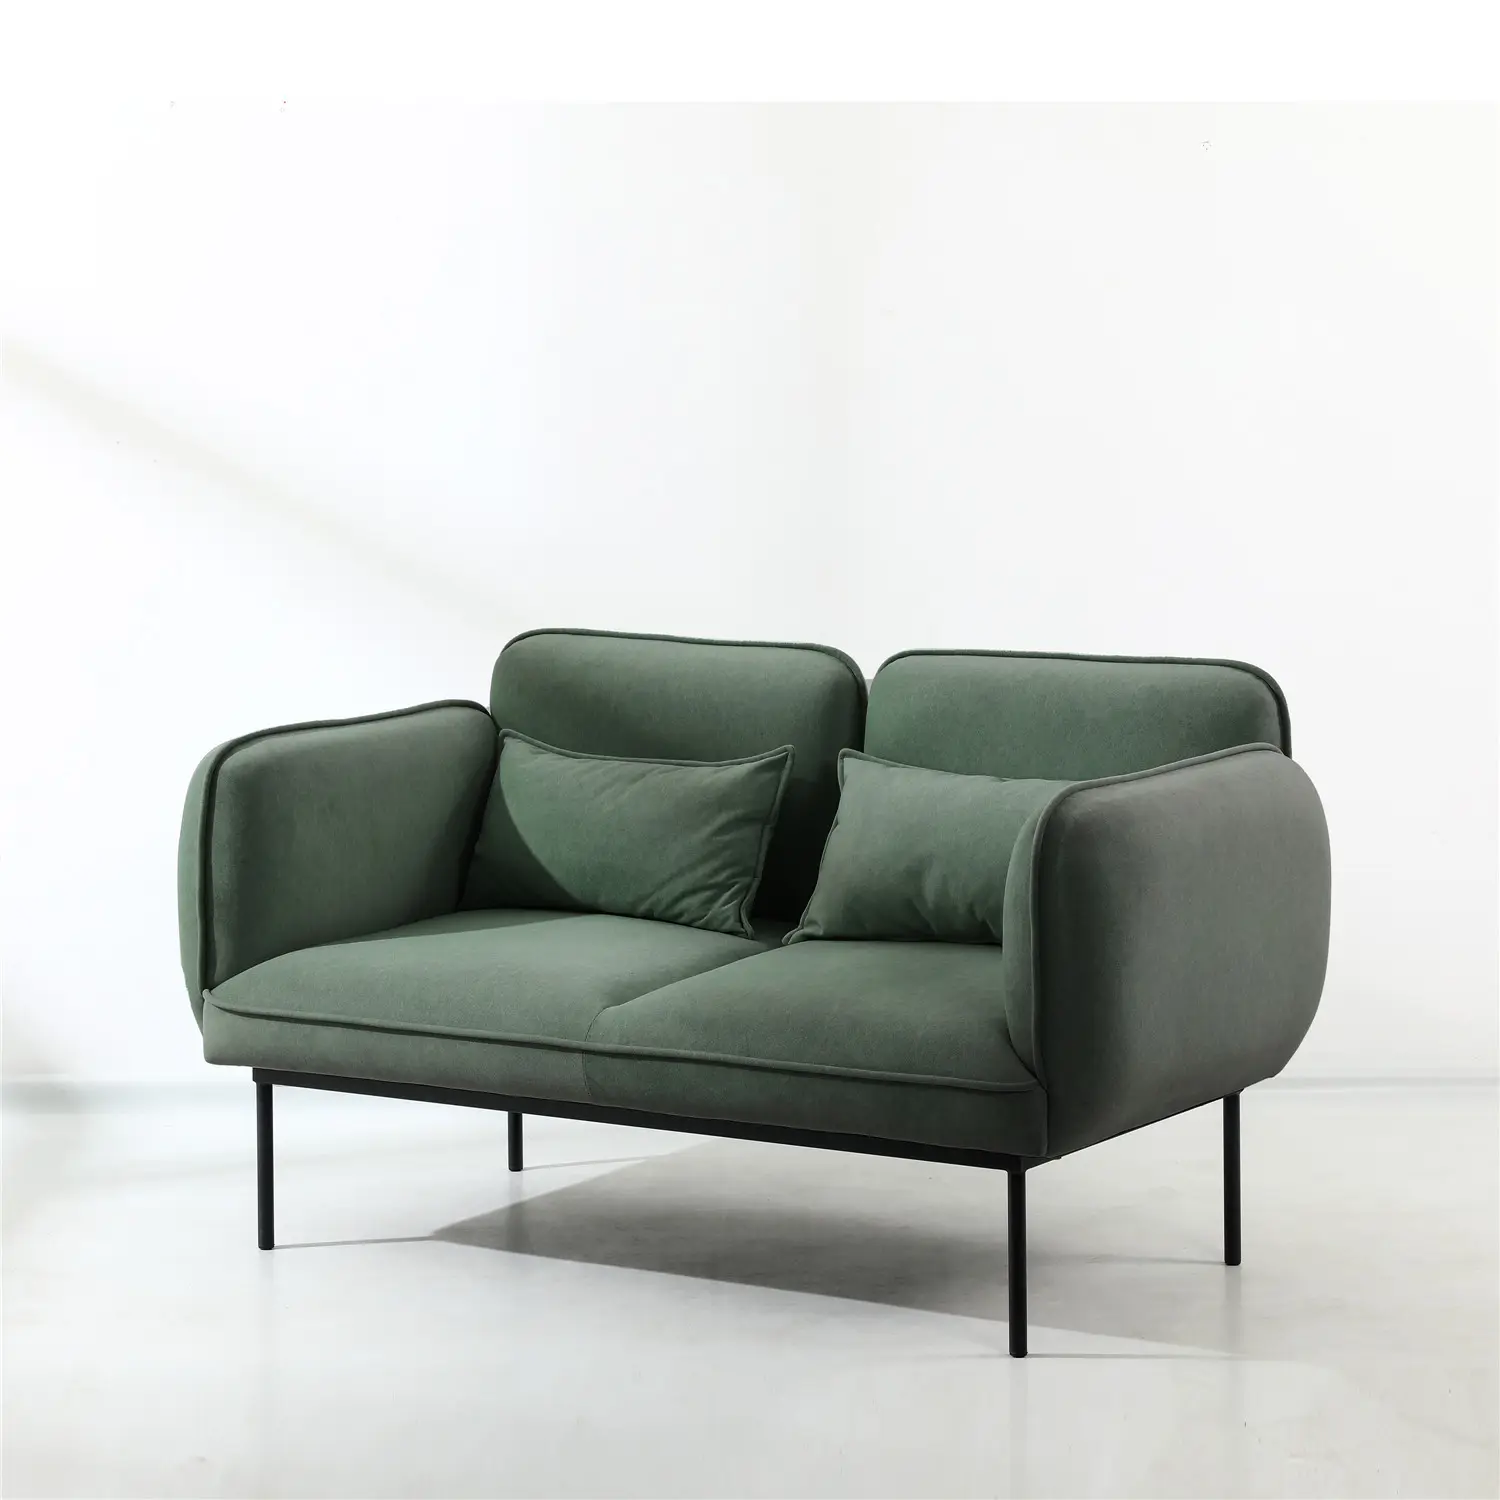 BSCI фабрика домашняя мебель современная тумба под Cutr Nordic Muebles Divano темно-зеленый ткань 2 местный гостиной диван с металлическими ножками